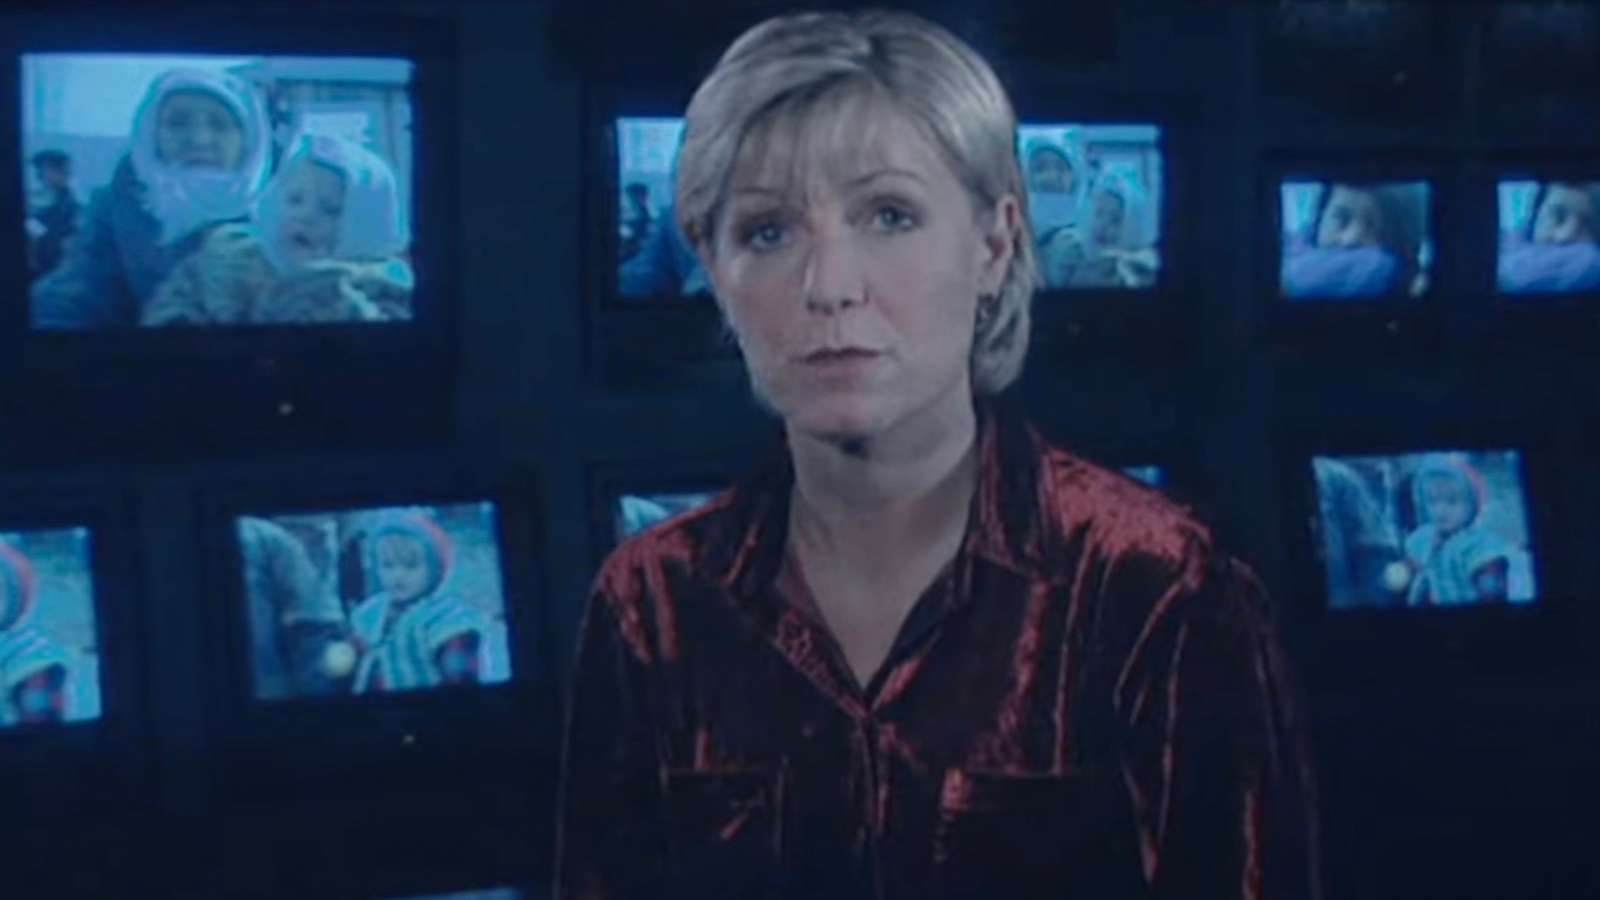 Jill Dando presenting Crimewatch on the BBC